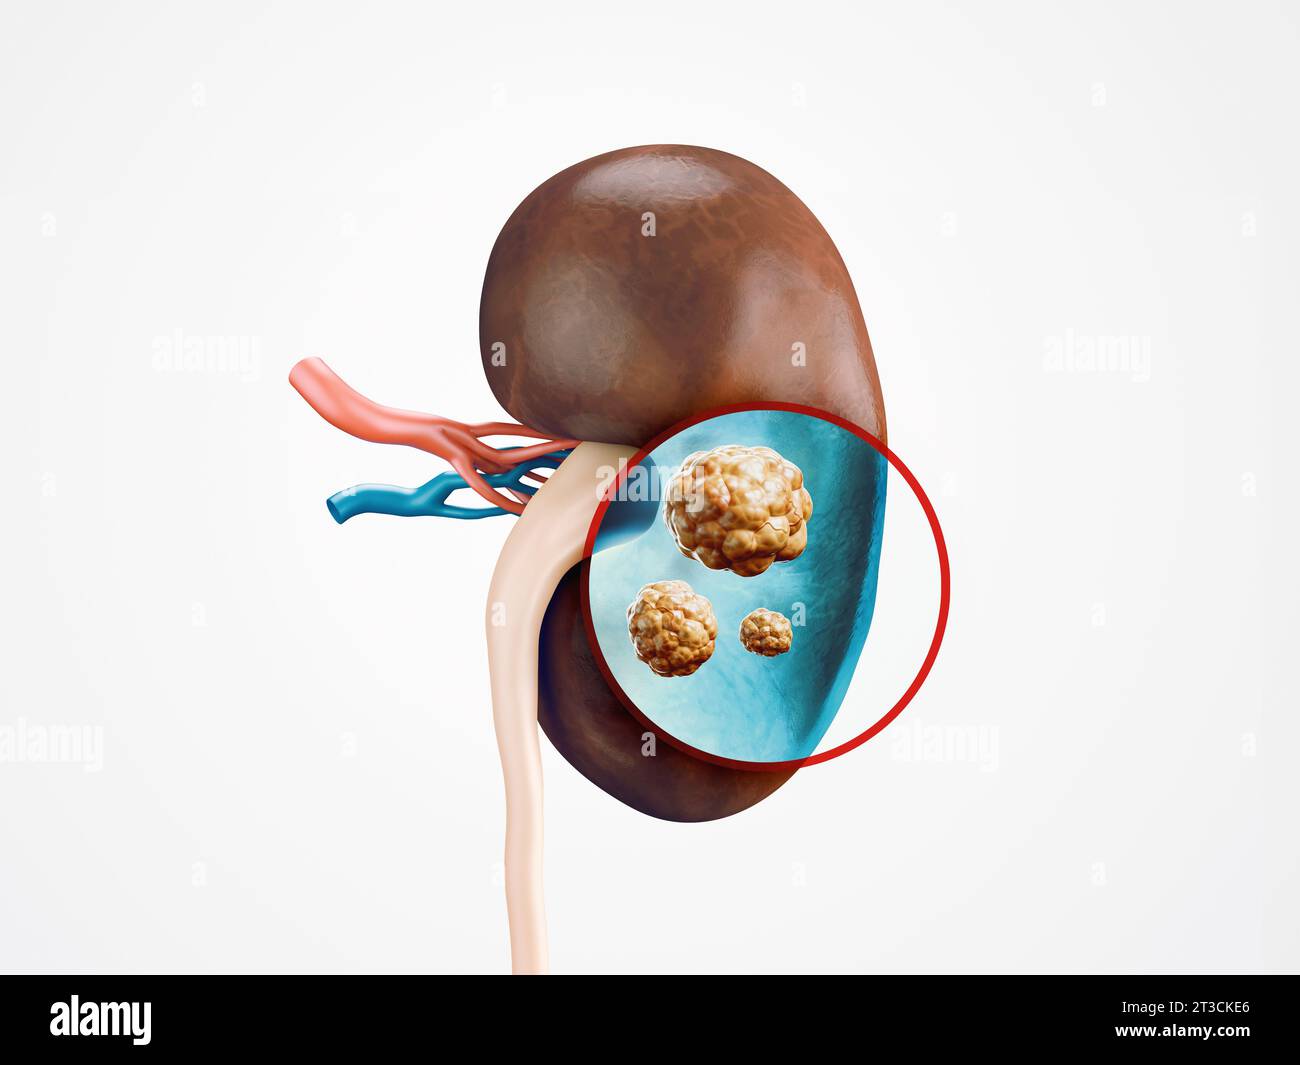 Anatomie de l'illustration réaliste 3d de l'organe interne humain - rein. Radiographie du rein humain à la recherche d'une maladie cancéreuse Banque D'Images